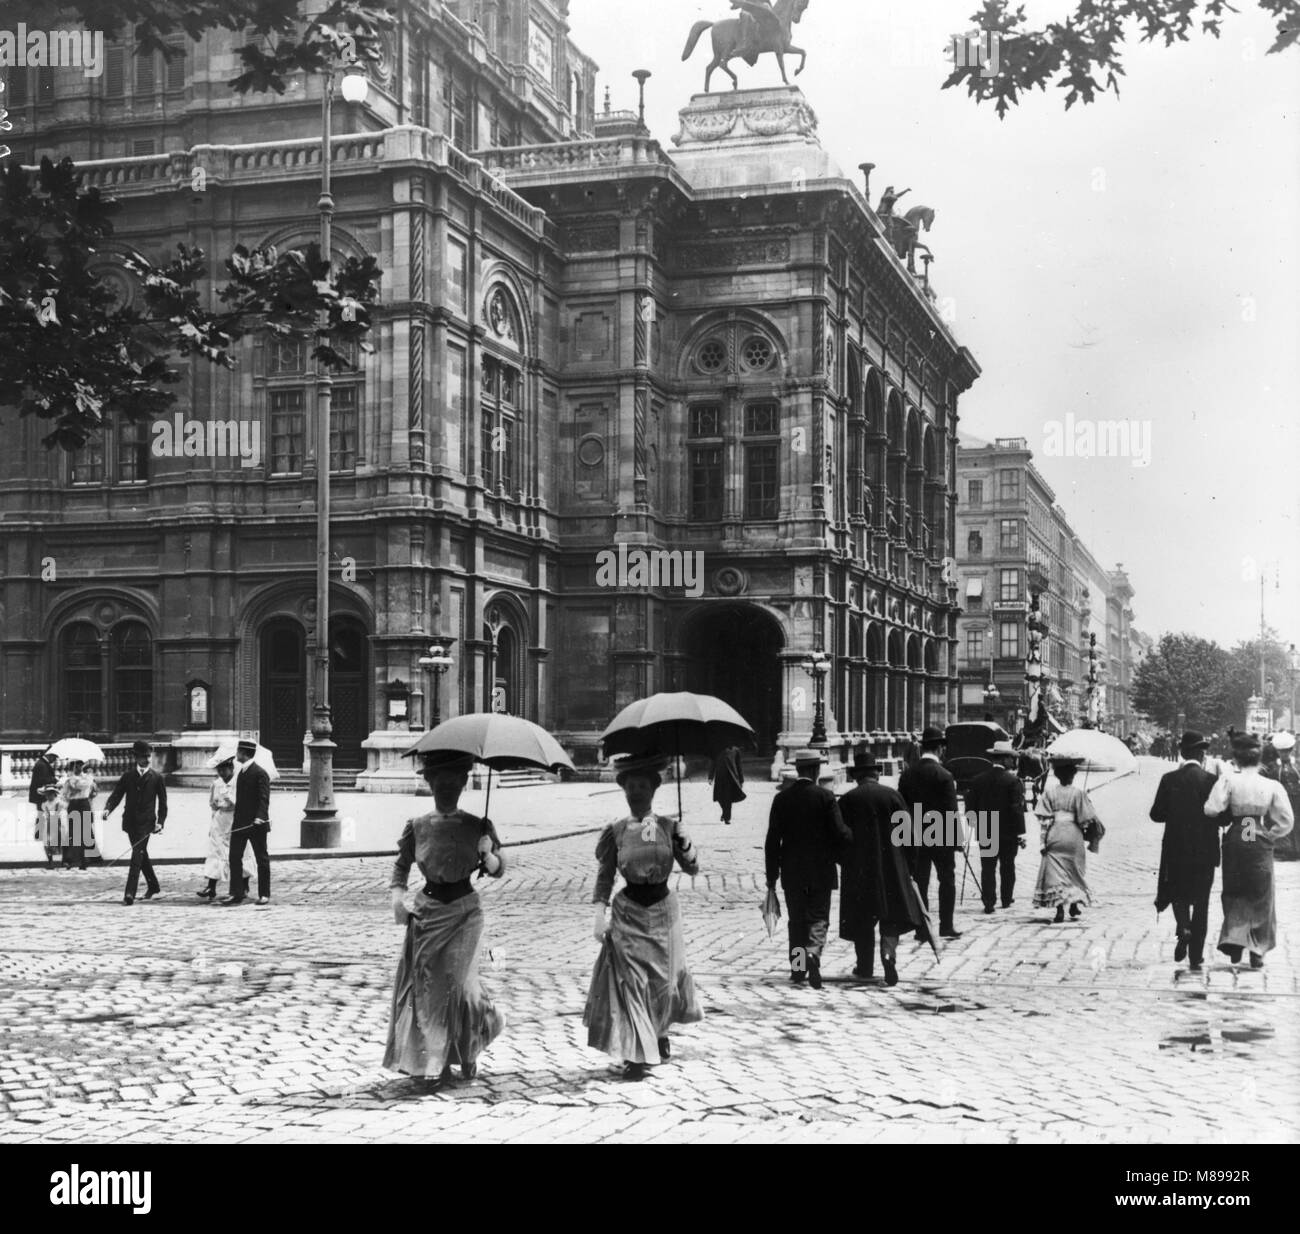 Maison de l'Opéra de Vienne, Vienne, Autriche, par Burton Holmes, 1907 Banque D'Images